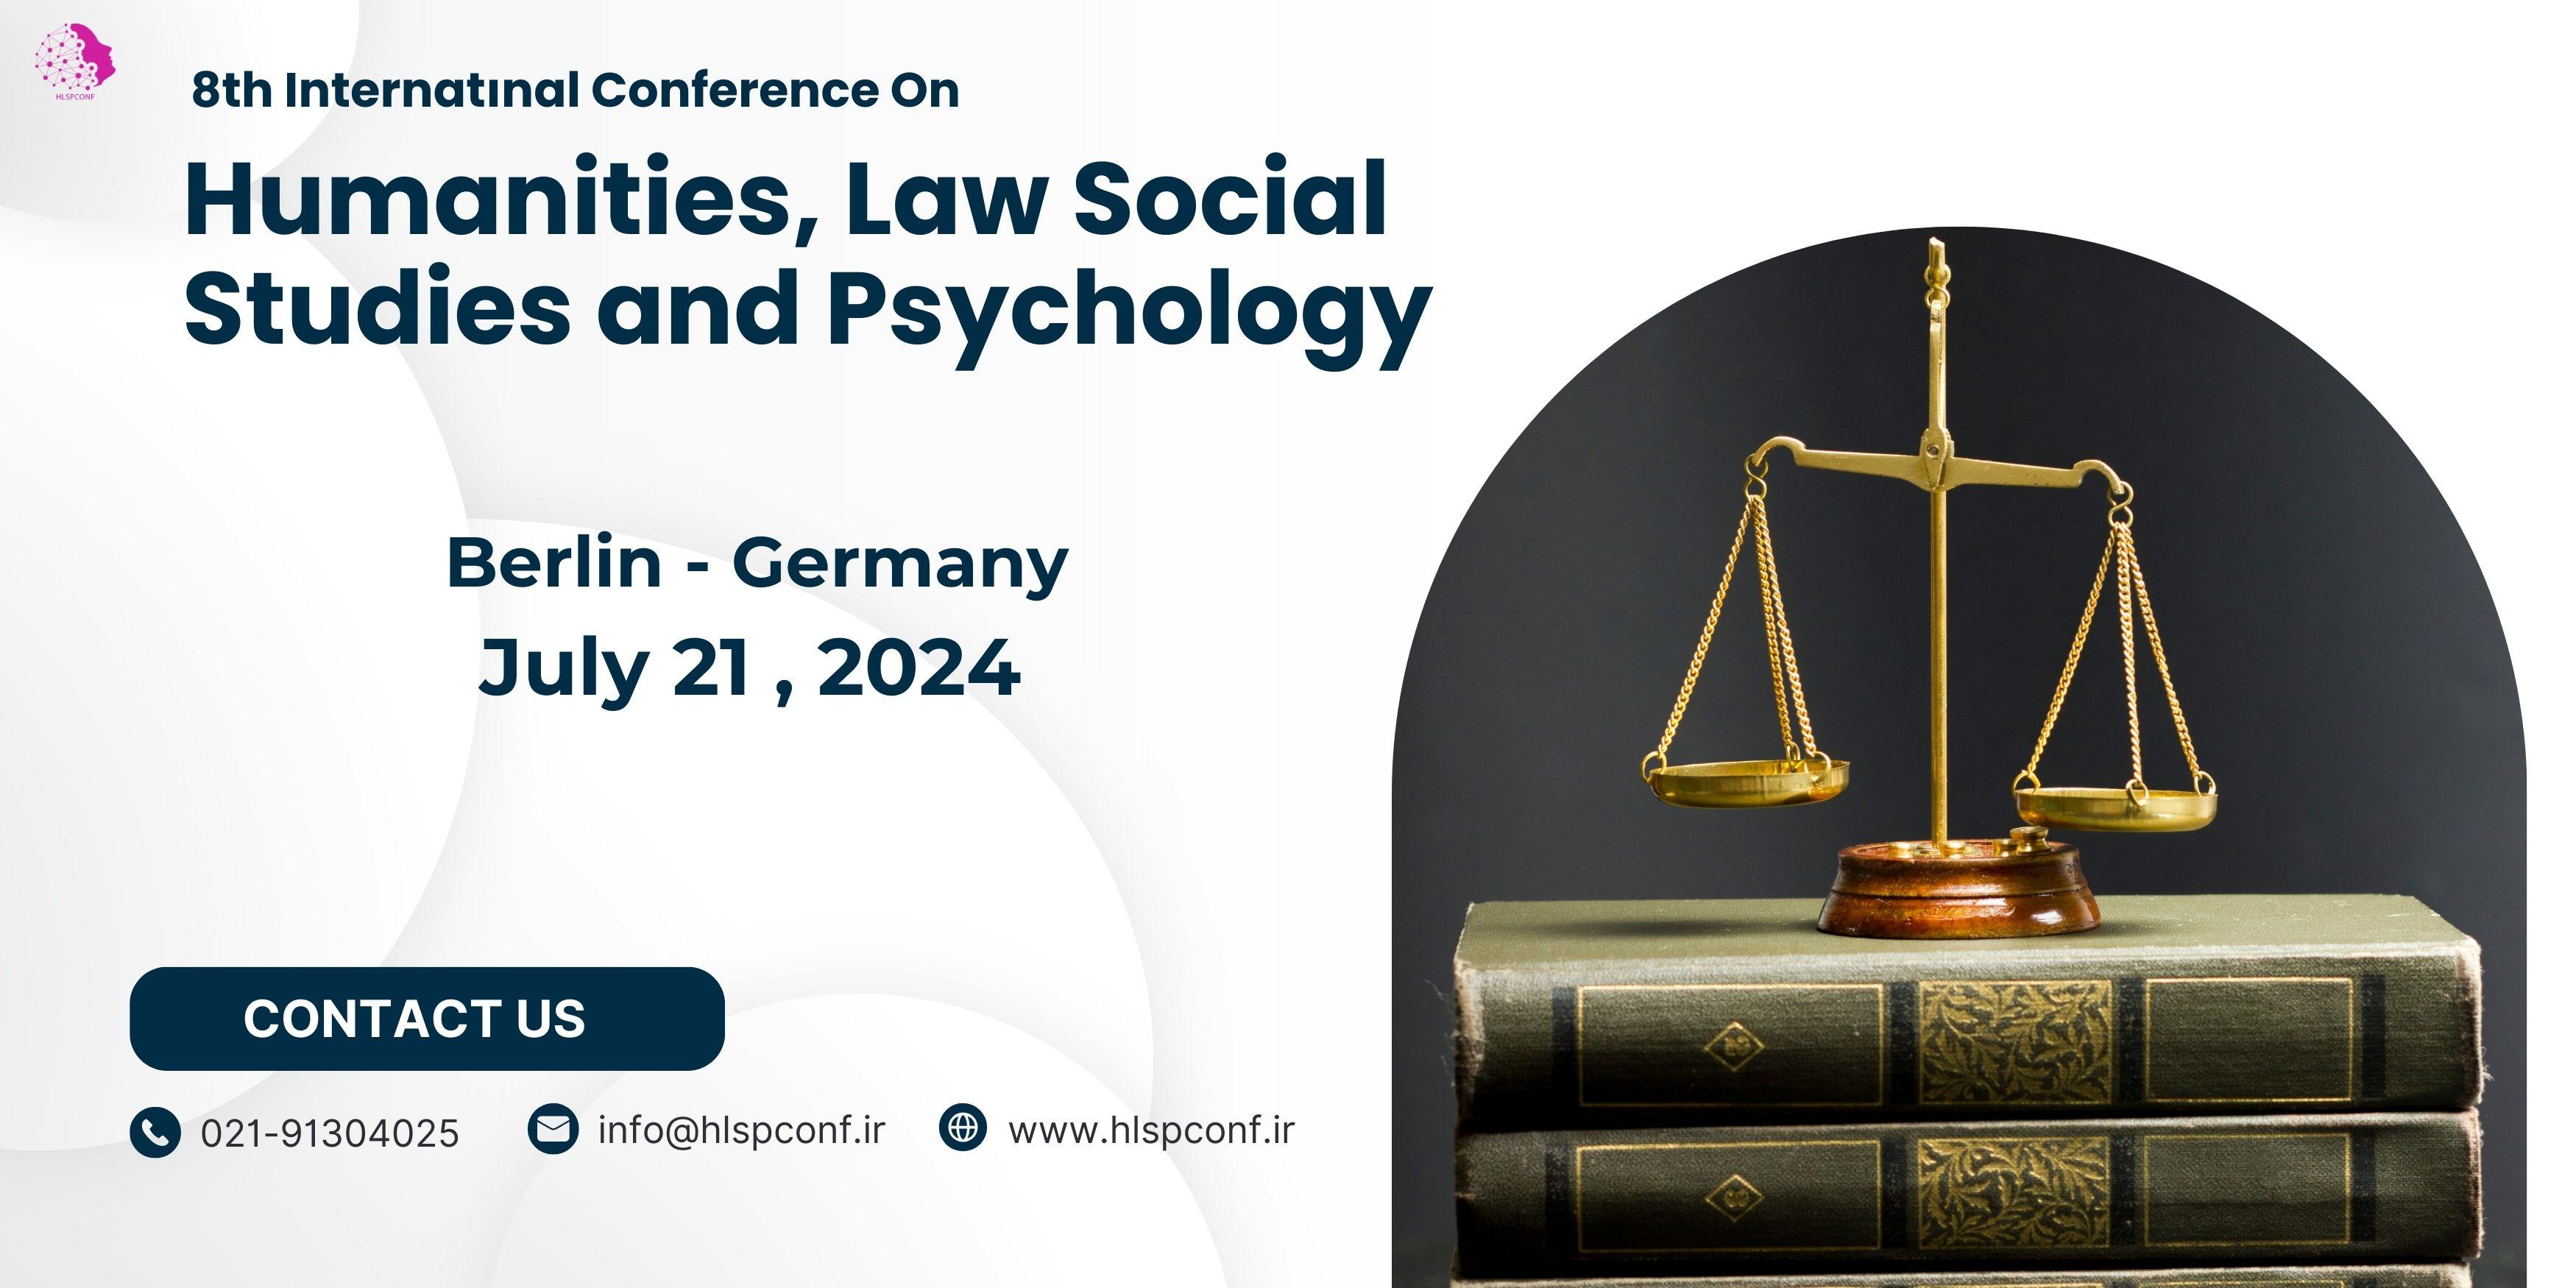  هفتمین کنفرانس بین المللی علوم انسانی، حقوق، مطالعات اجتماعی و روانشناسی